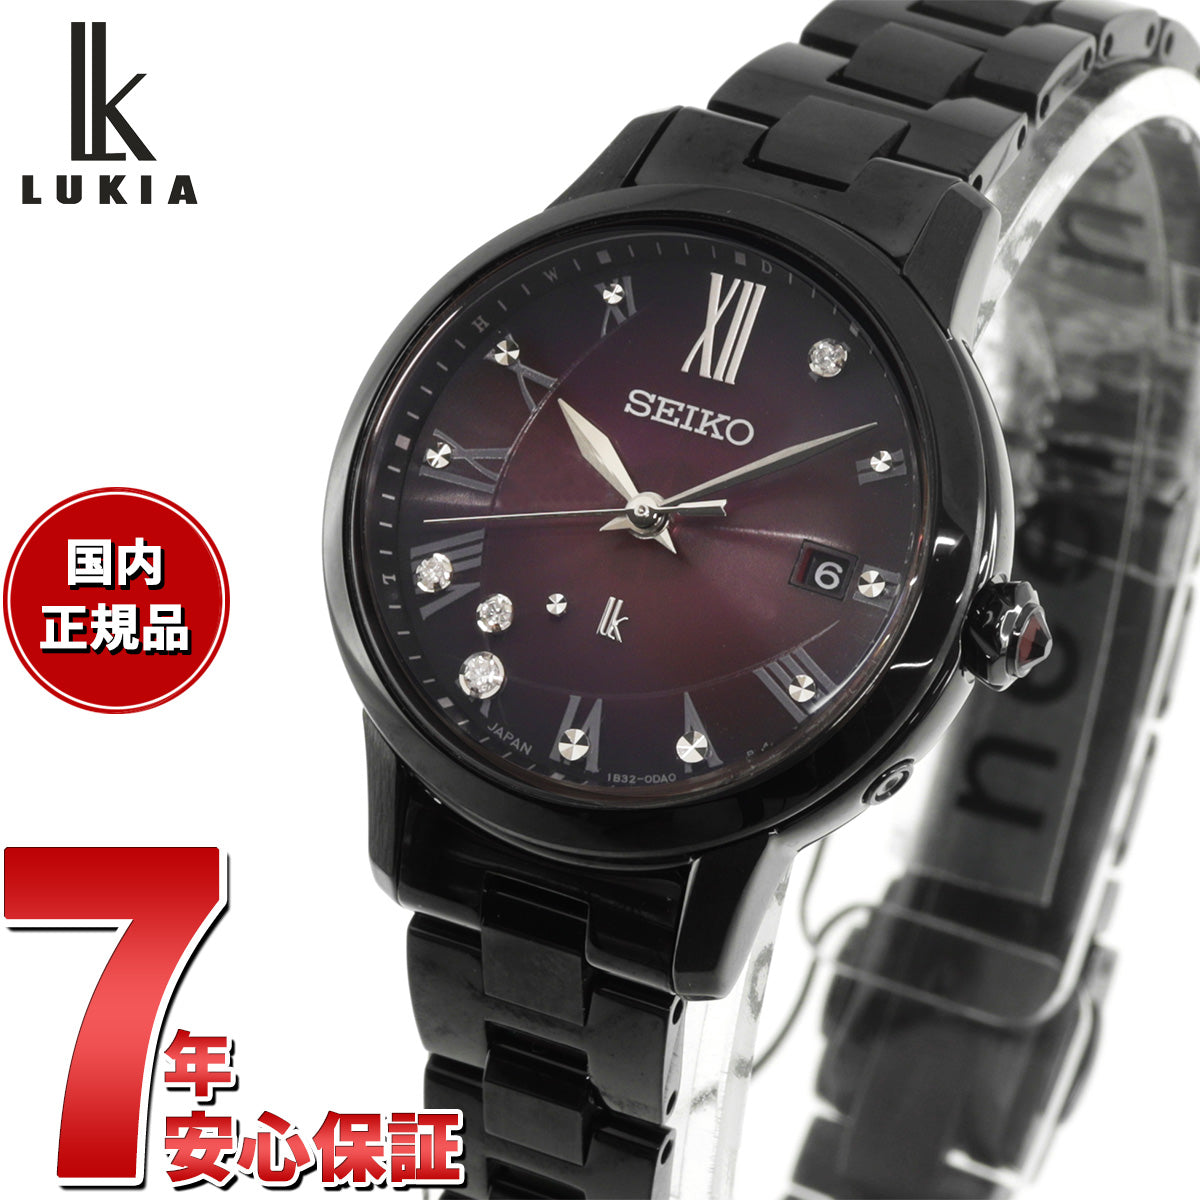 21,000円限定 SEIKO LUKIA/ ルキア ダイヤ 電波時計